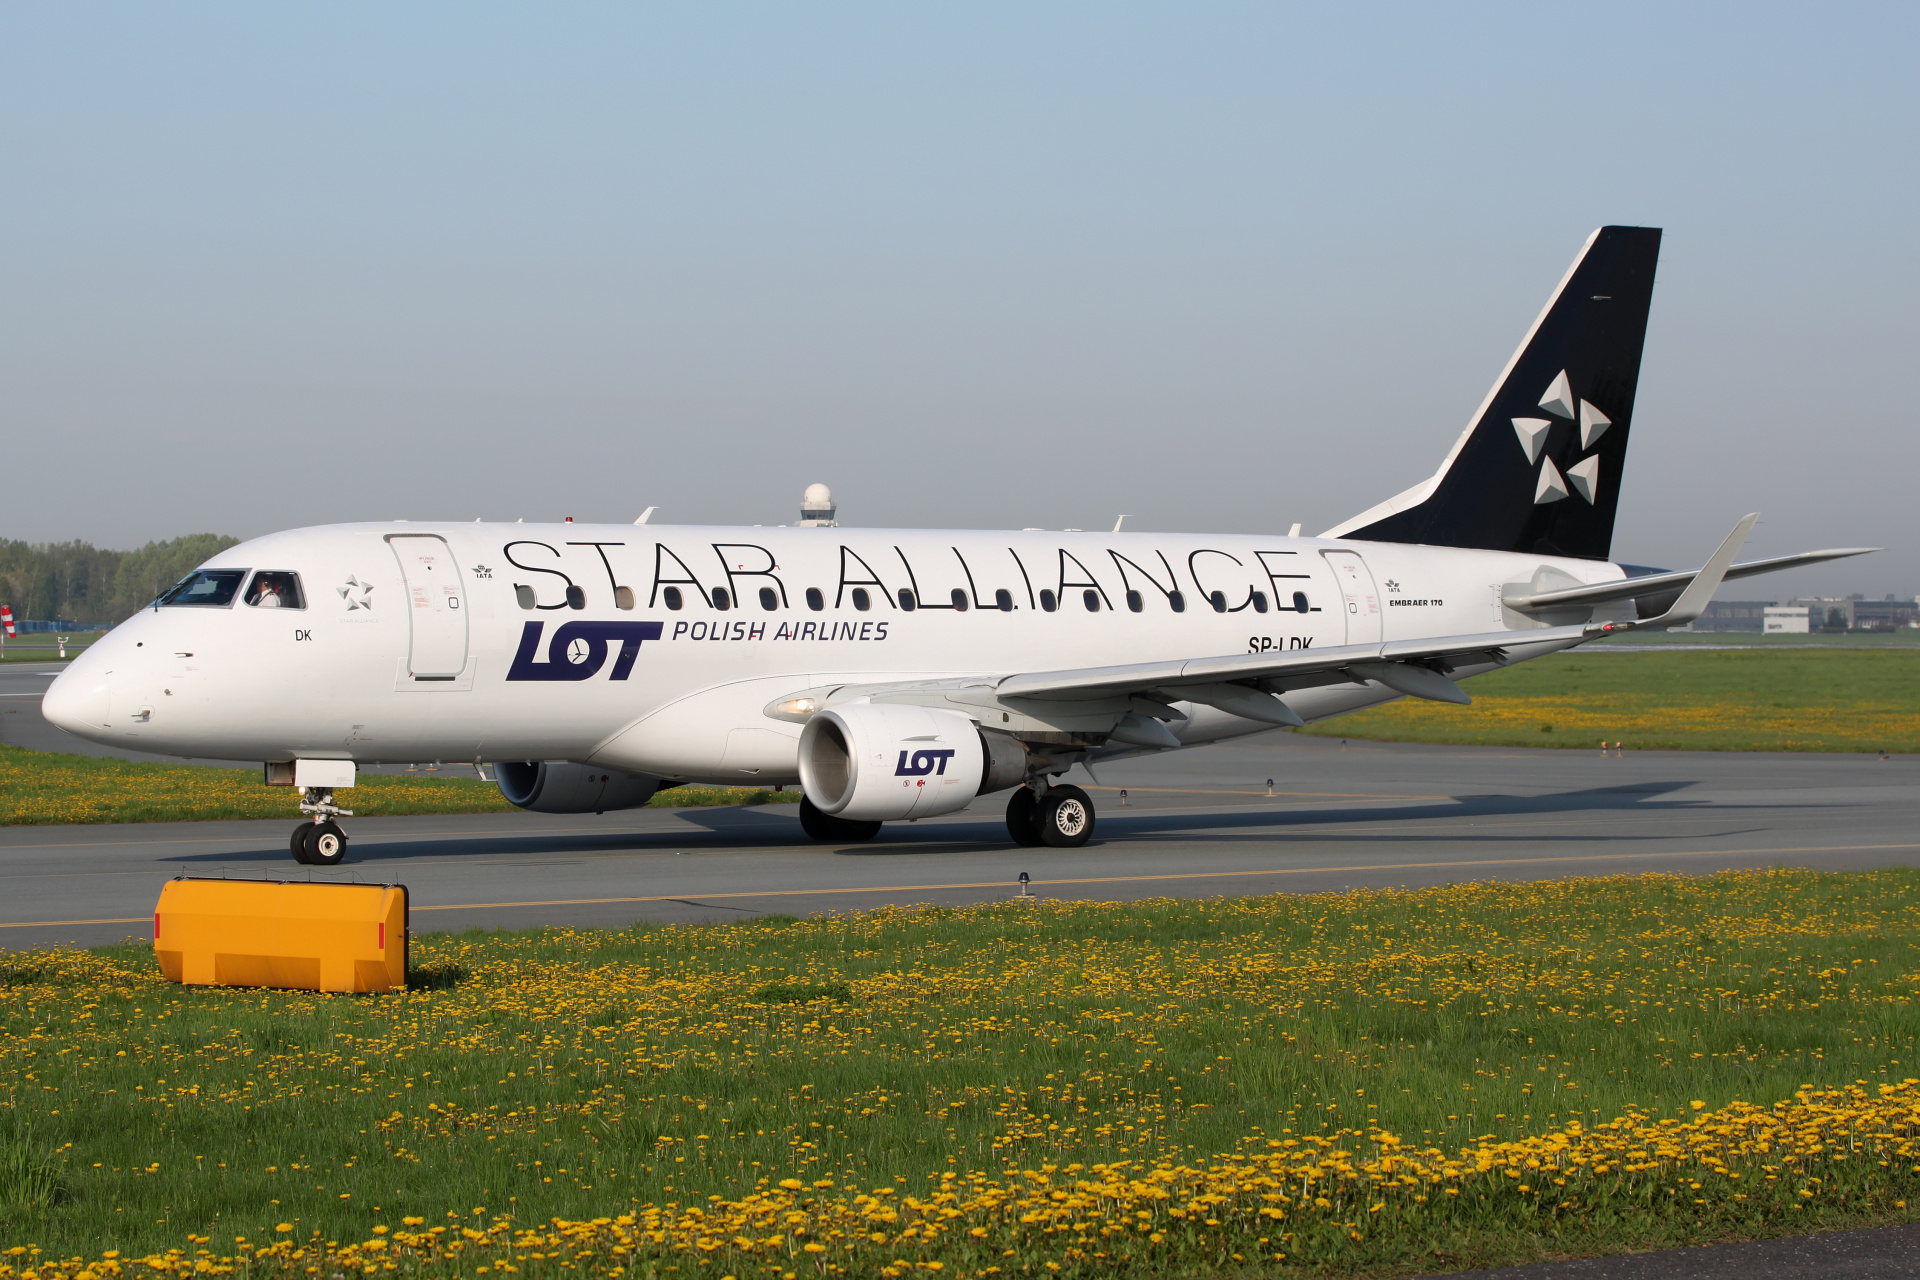 SP-LDK (malowanie Star Alliance) (Samoloty » Spotting na EPWA » Embraer E170 » Polskie Linie Lotnicze LOT)